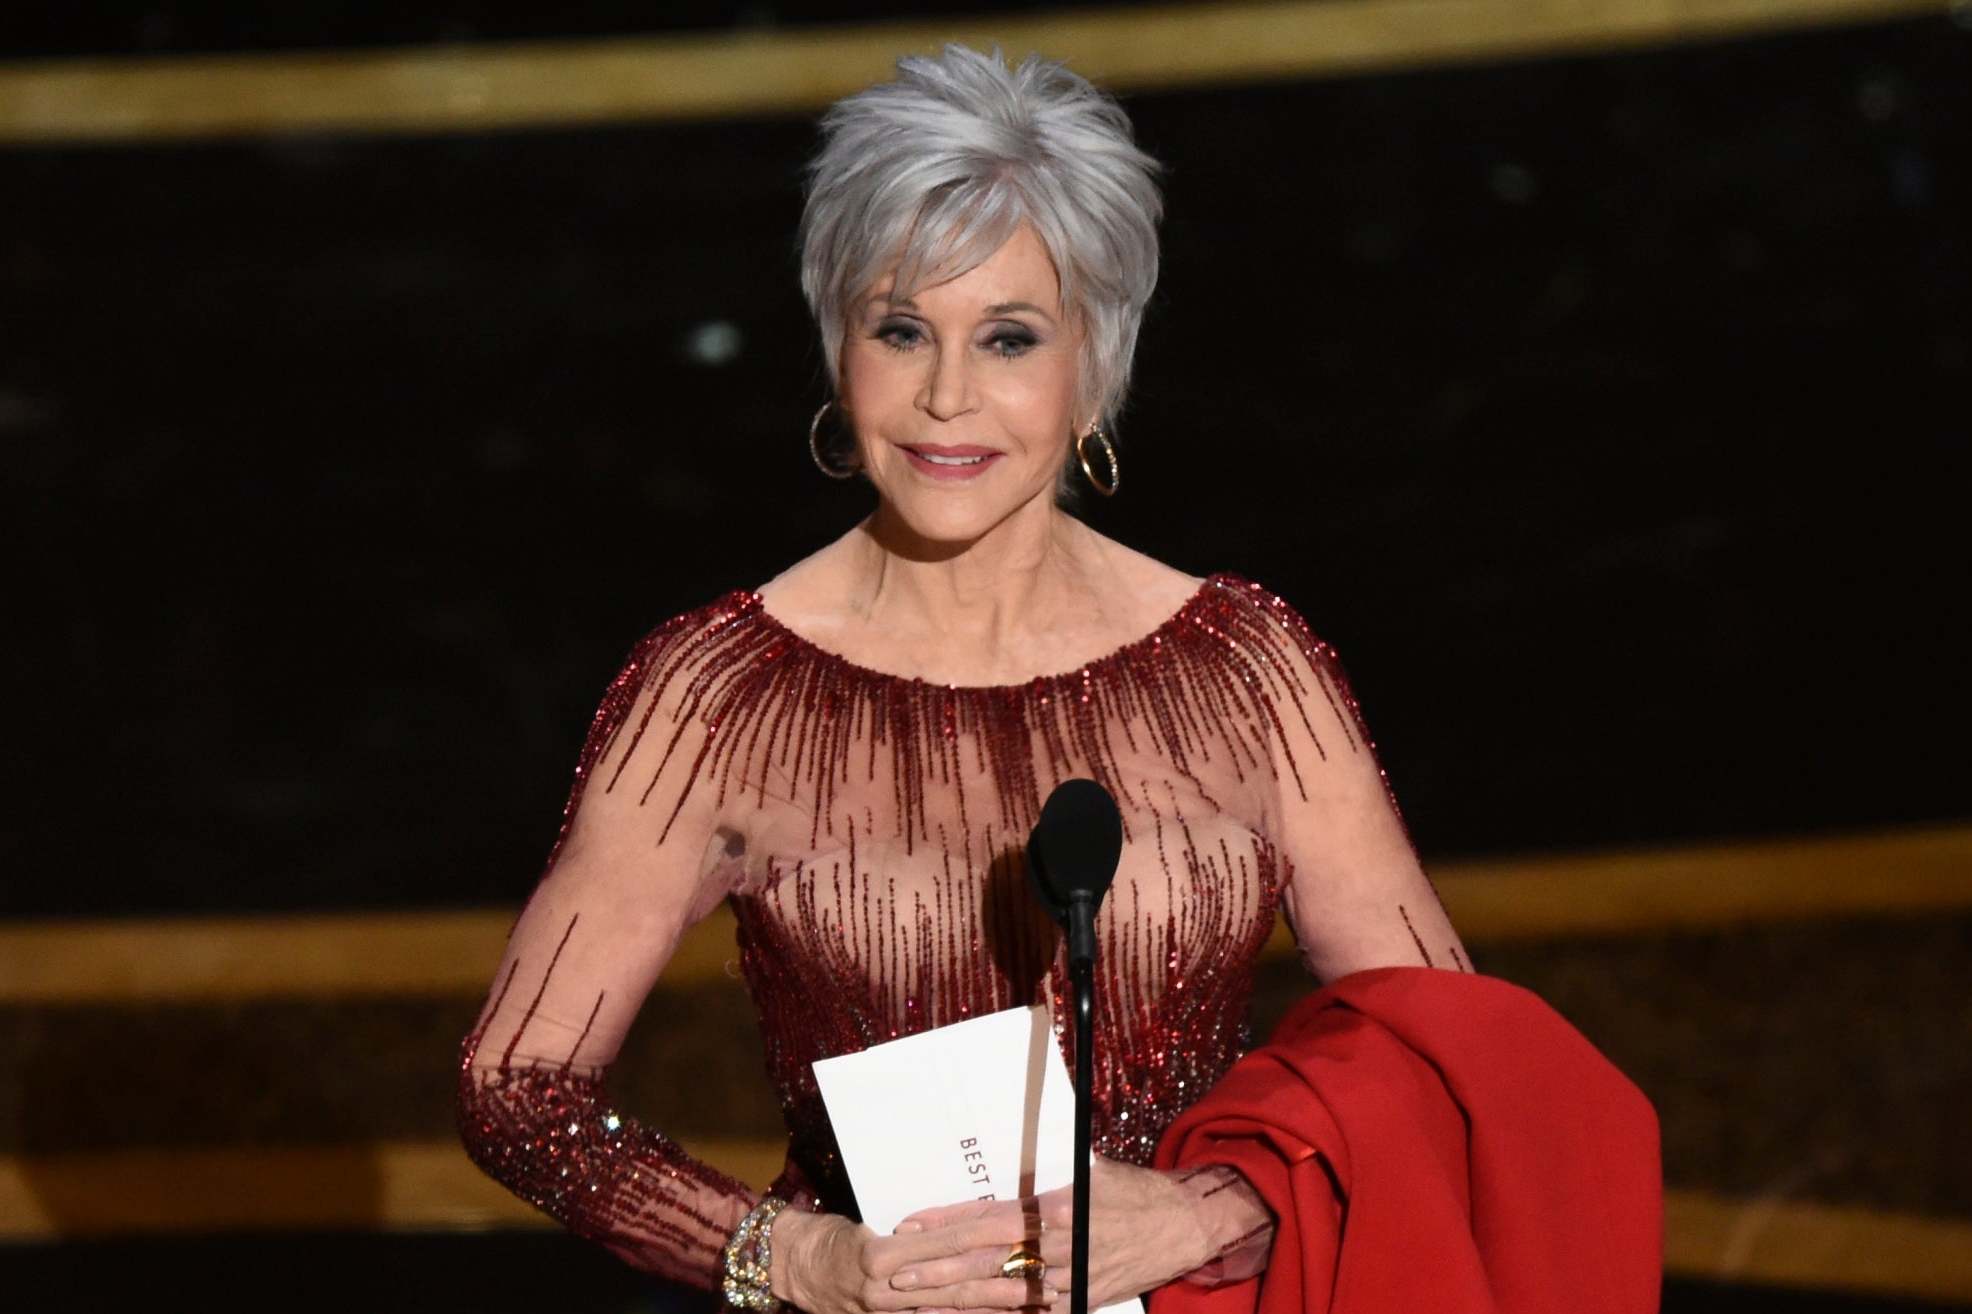 El significado detrás del vestido que Jane Fonda usó en los premios Oscar 2020